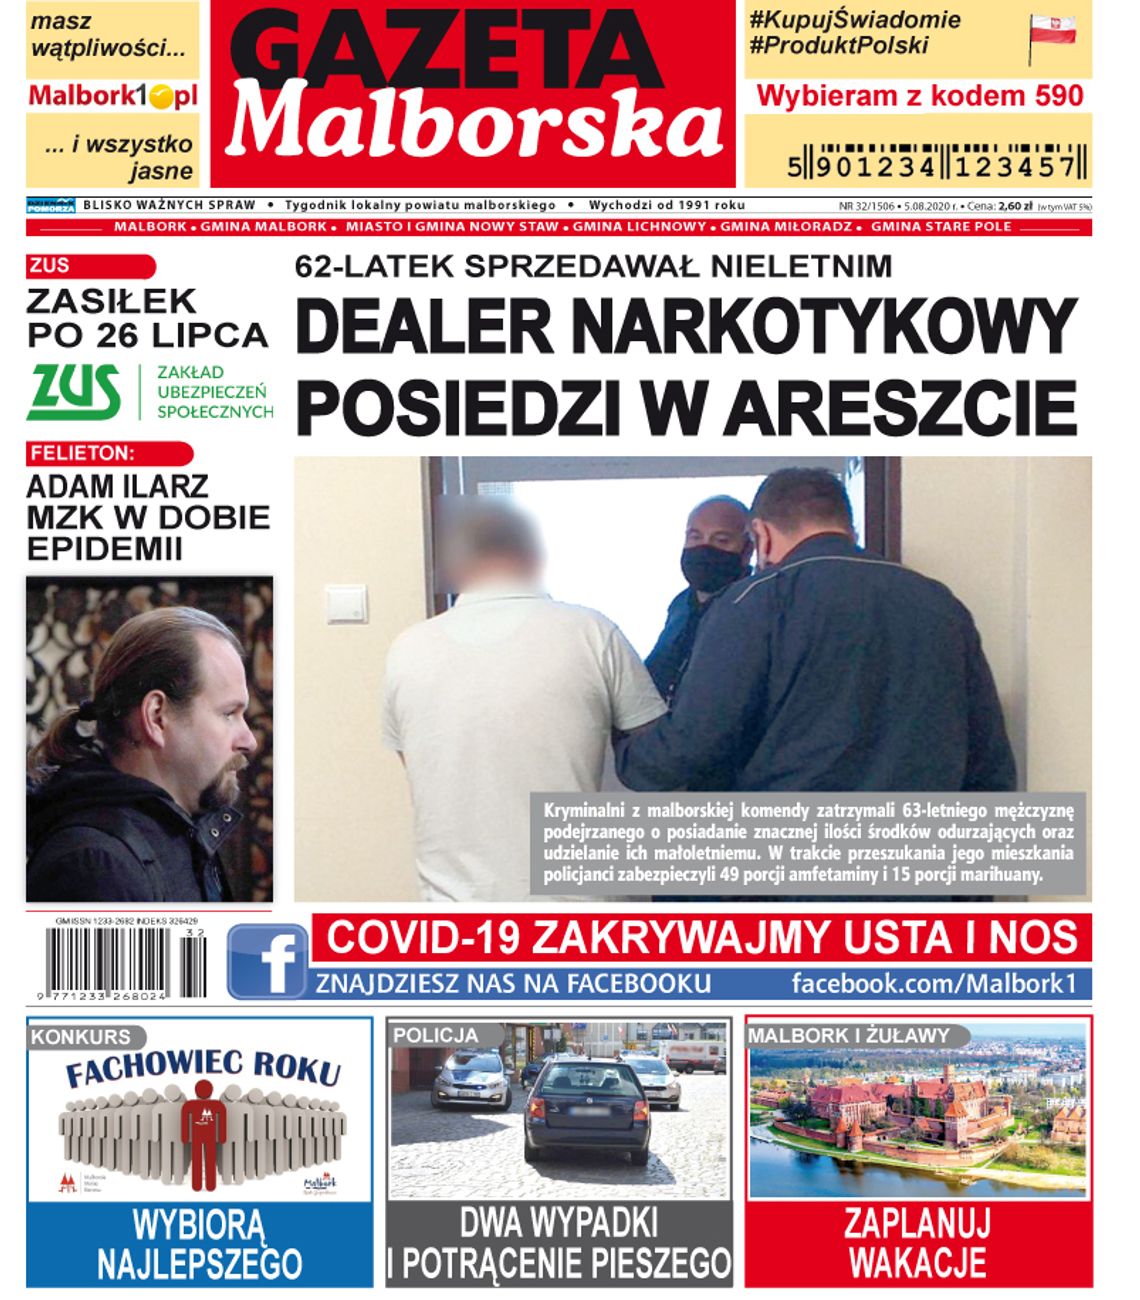 Najnowszy numer tygodnika Gazety Malborskiej już w kioskach. A w środku…